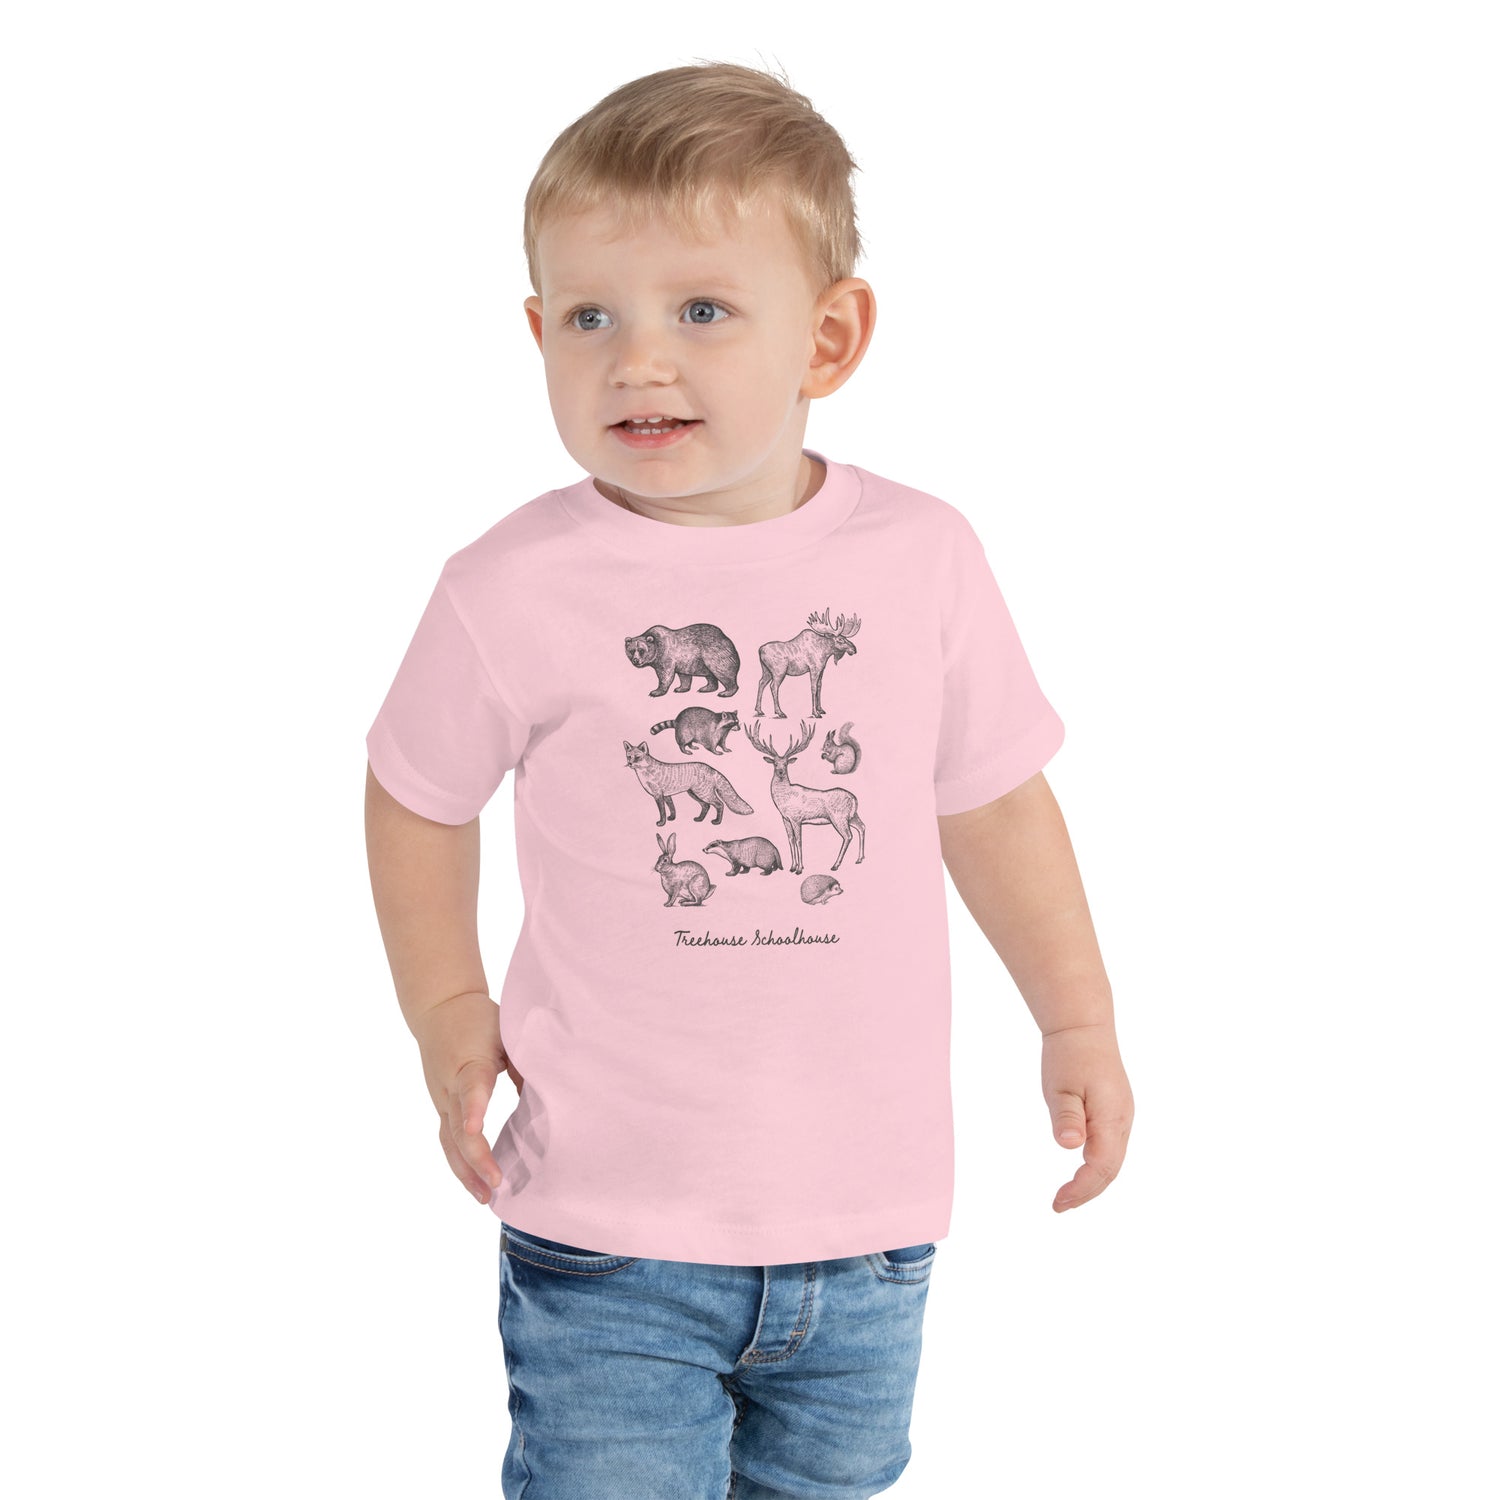 Toddler Woodland Creatures T-Shirt